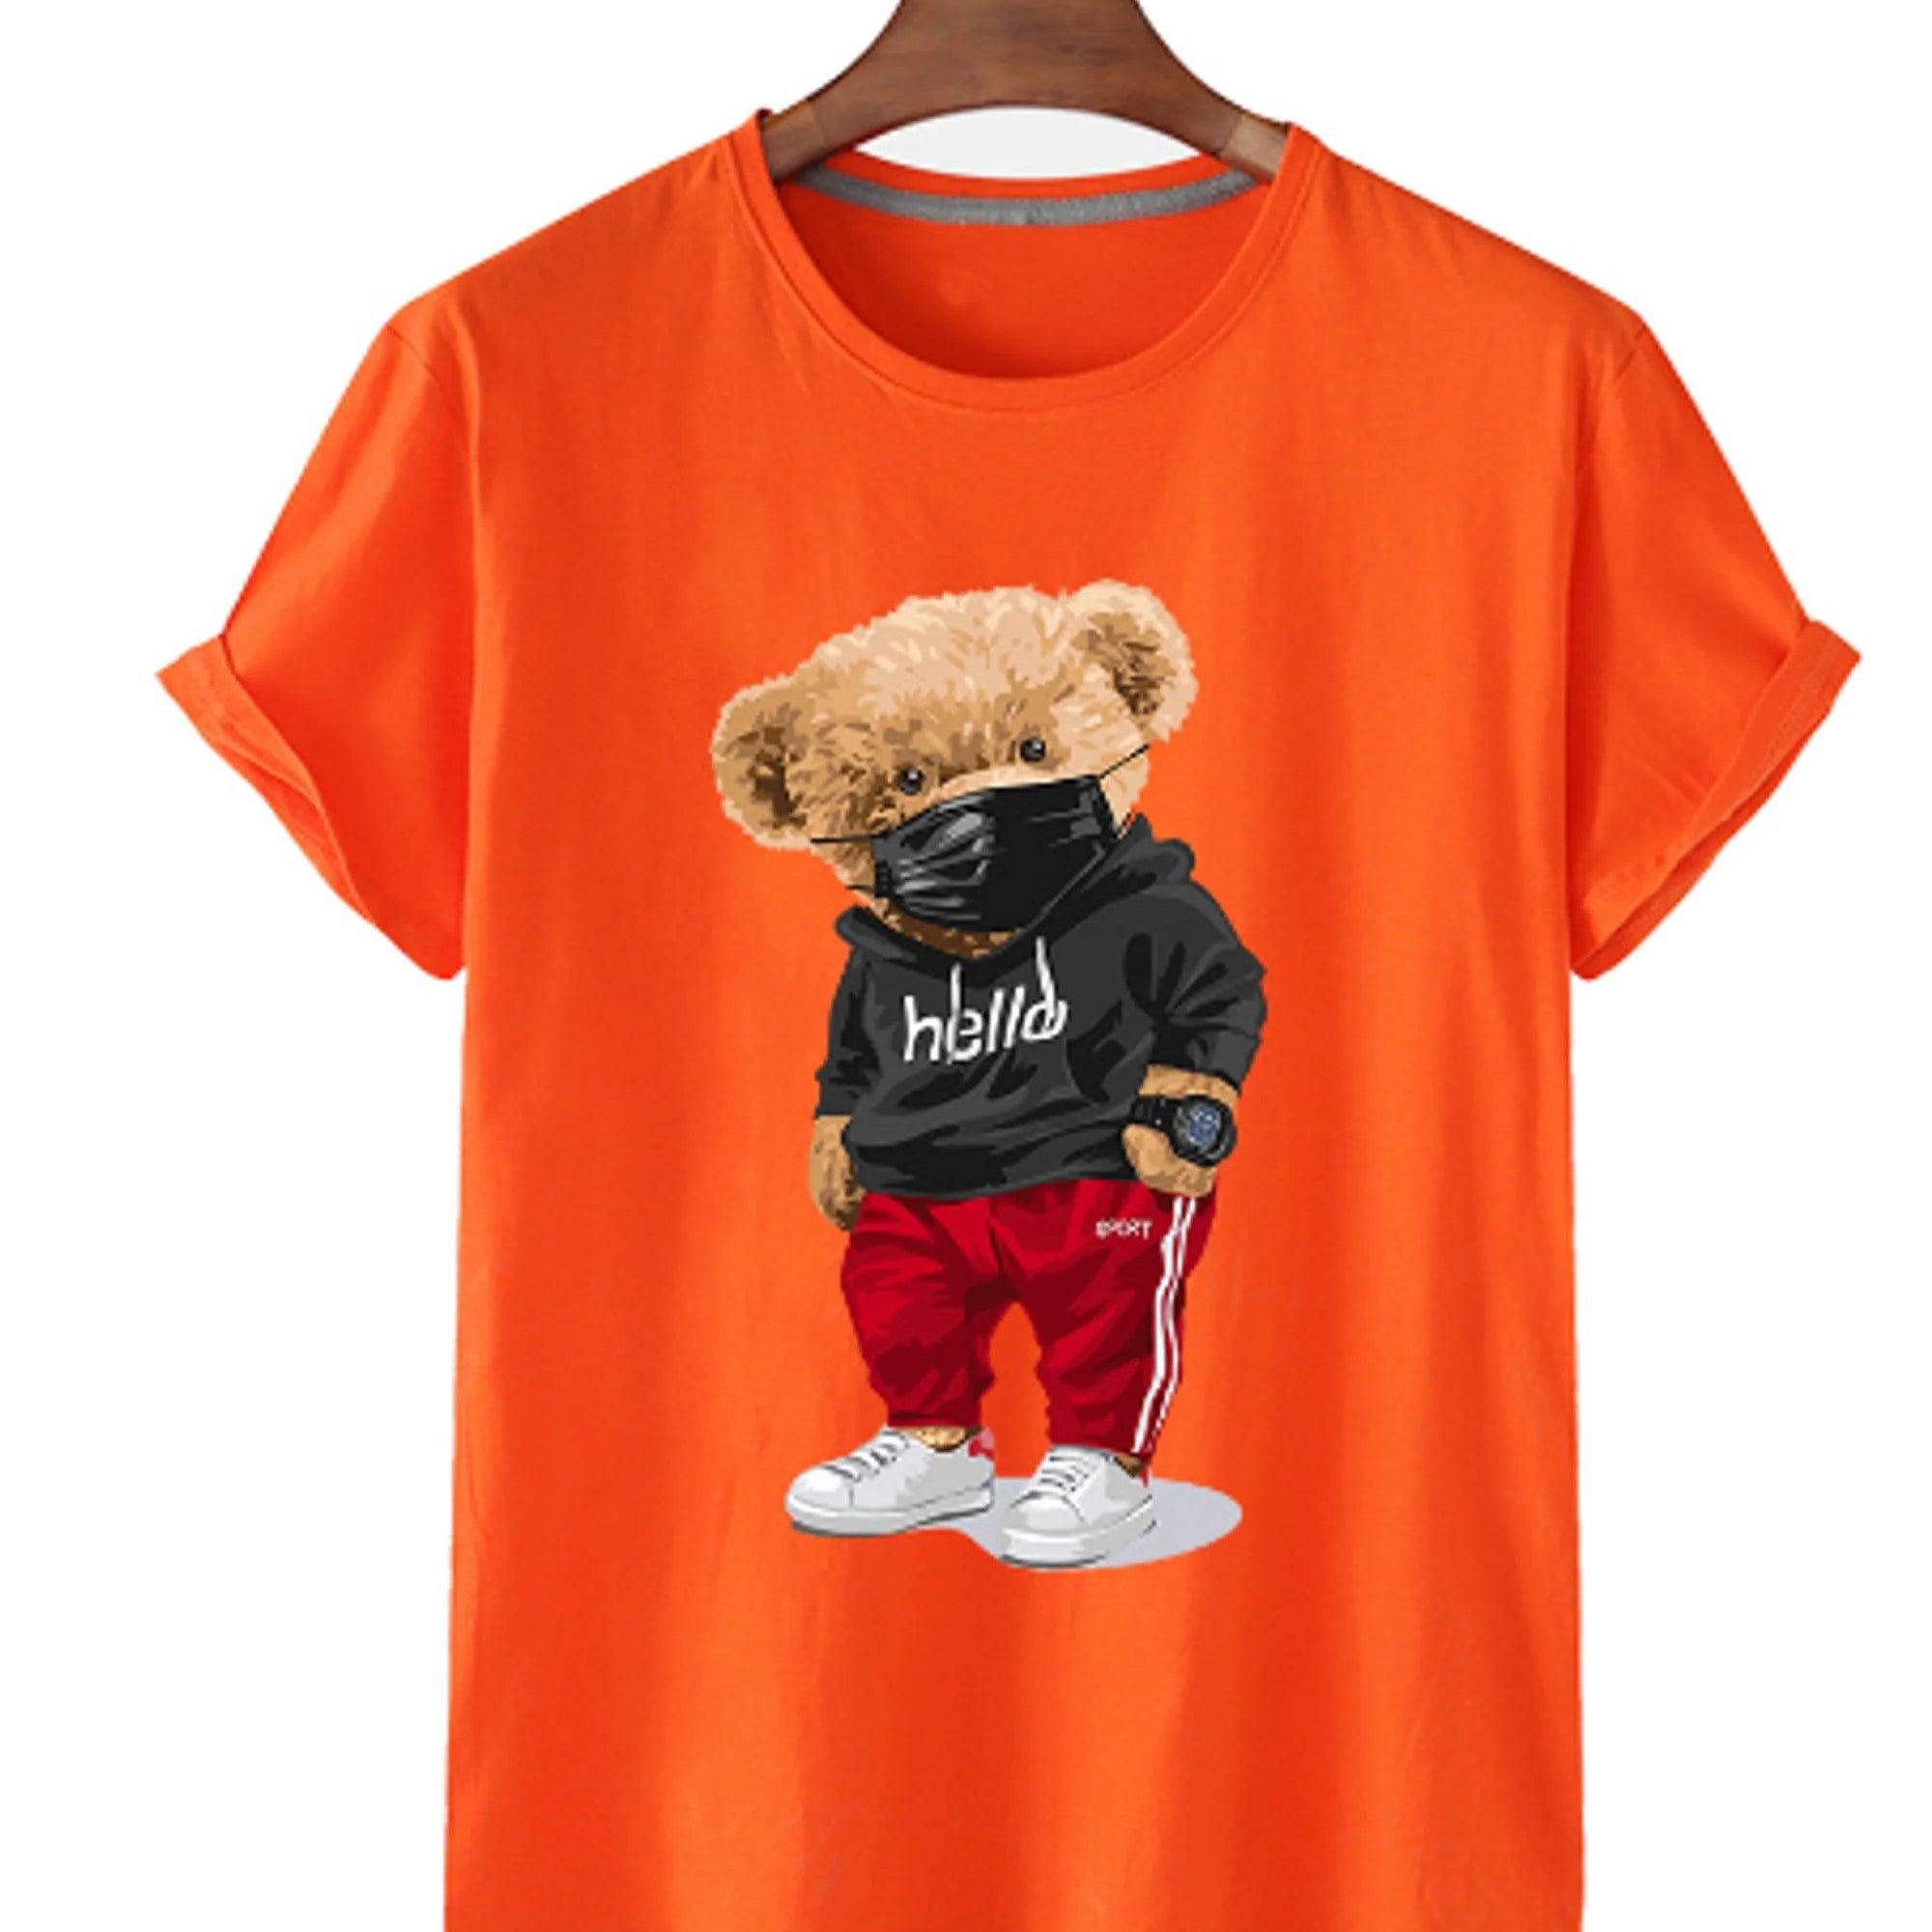 Bear Print Men's Cotton T Shirt - BelleHarris